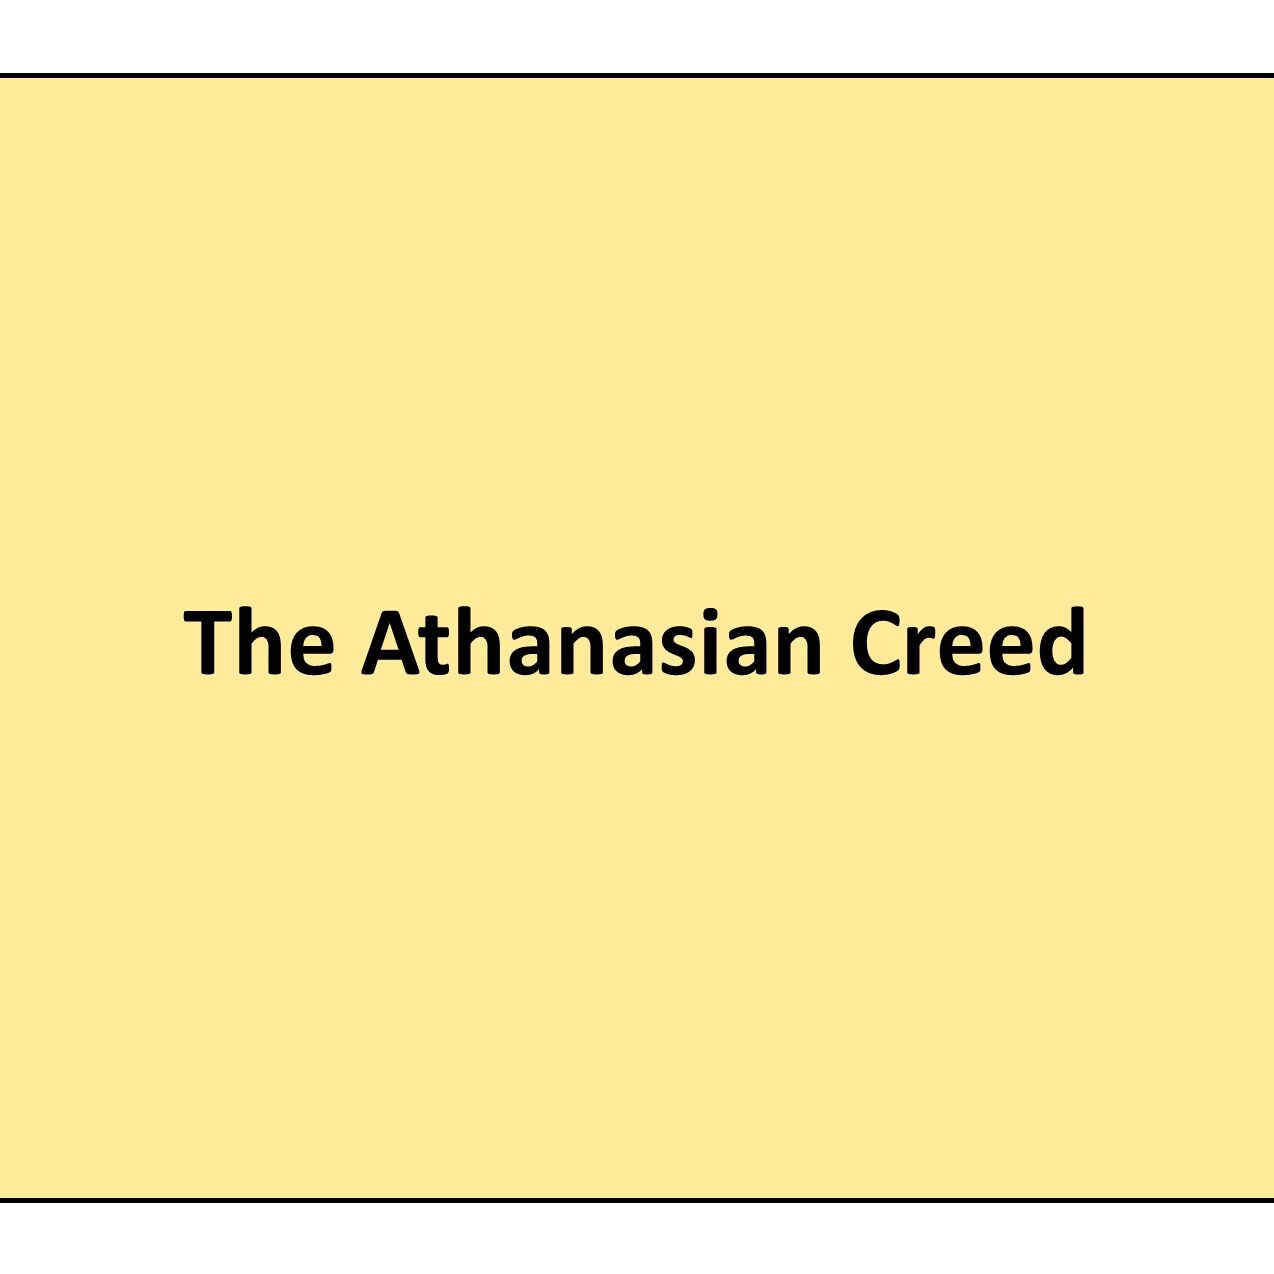 Athanasian Creed